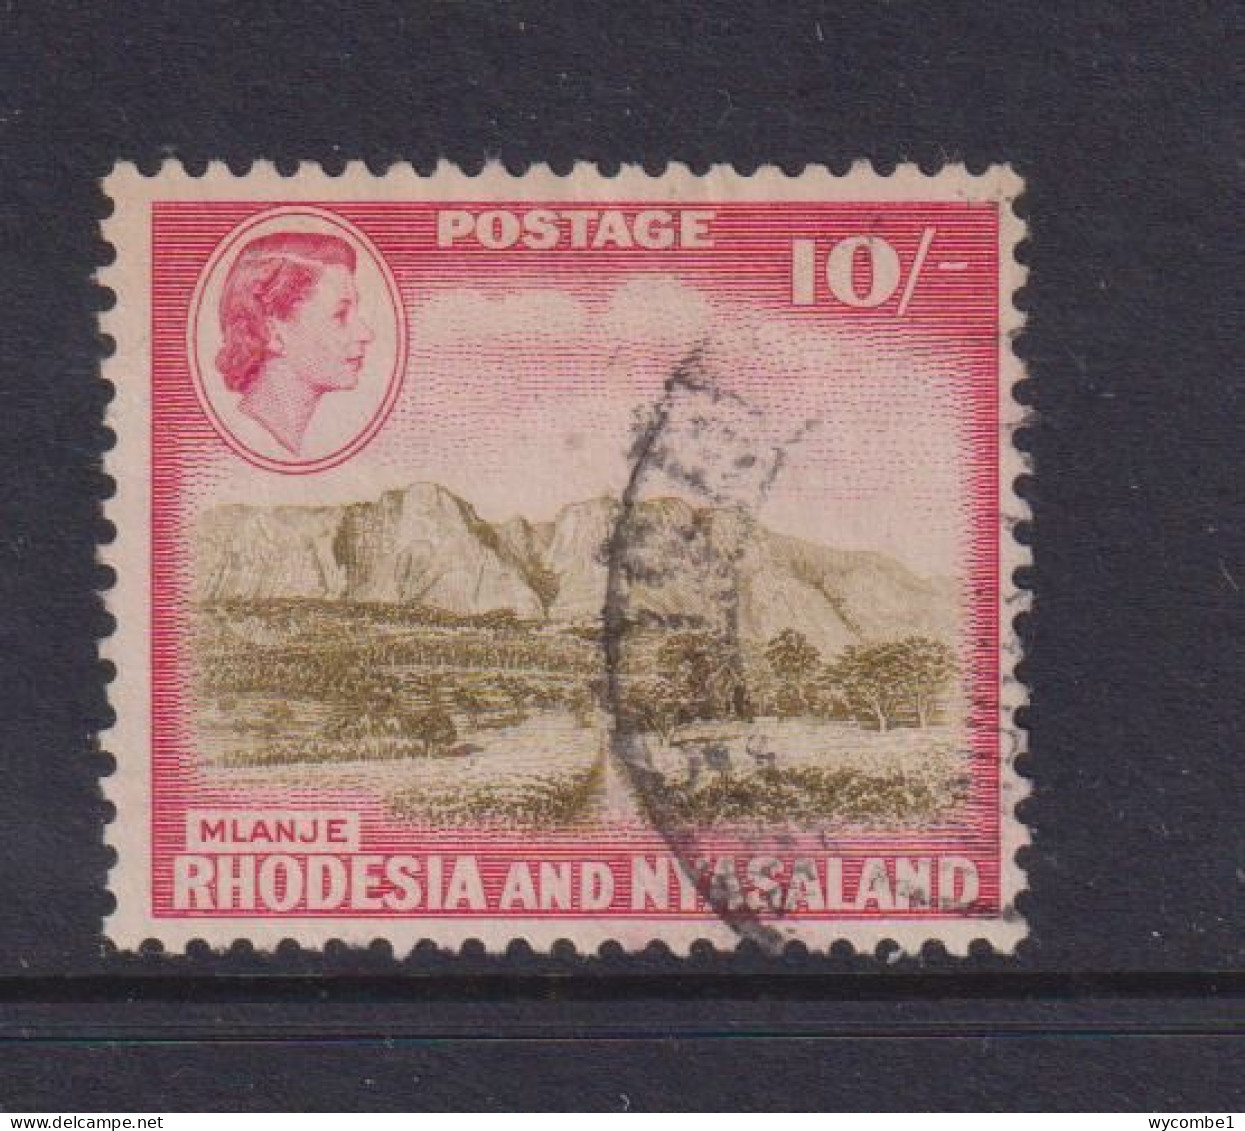 RHODESIA  AND NYASALAND - 1959 Definitive 10s  Used As Scan - Rhodesië & Nyasaland (1954-1963)